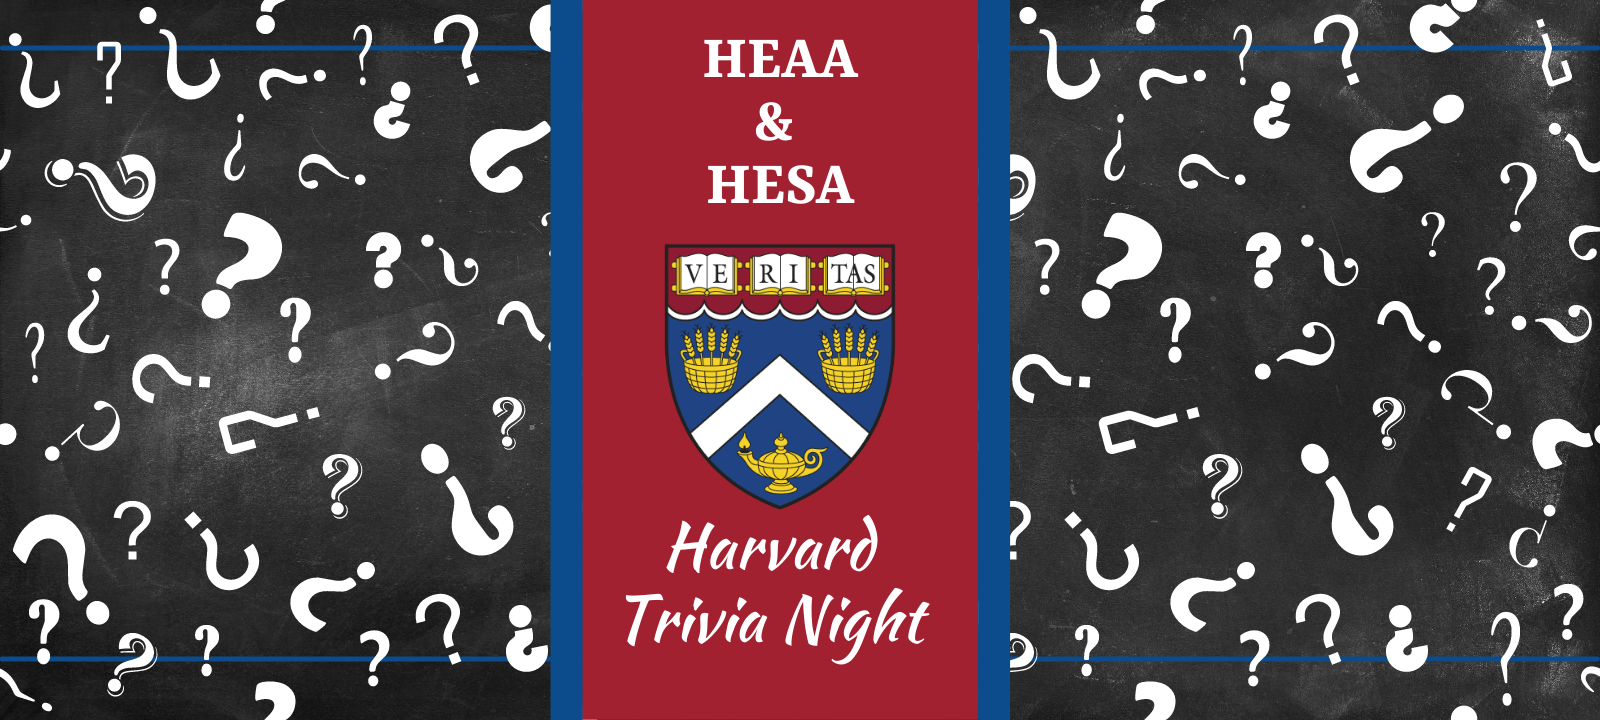 HEAA HESA Trivia Night 12.8.21 (1)